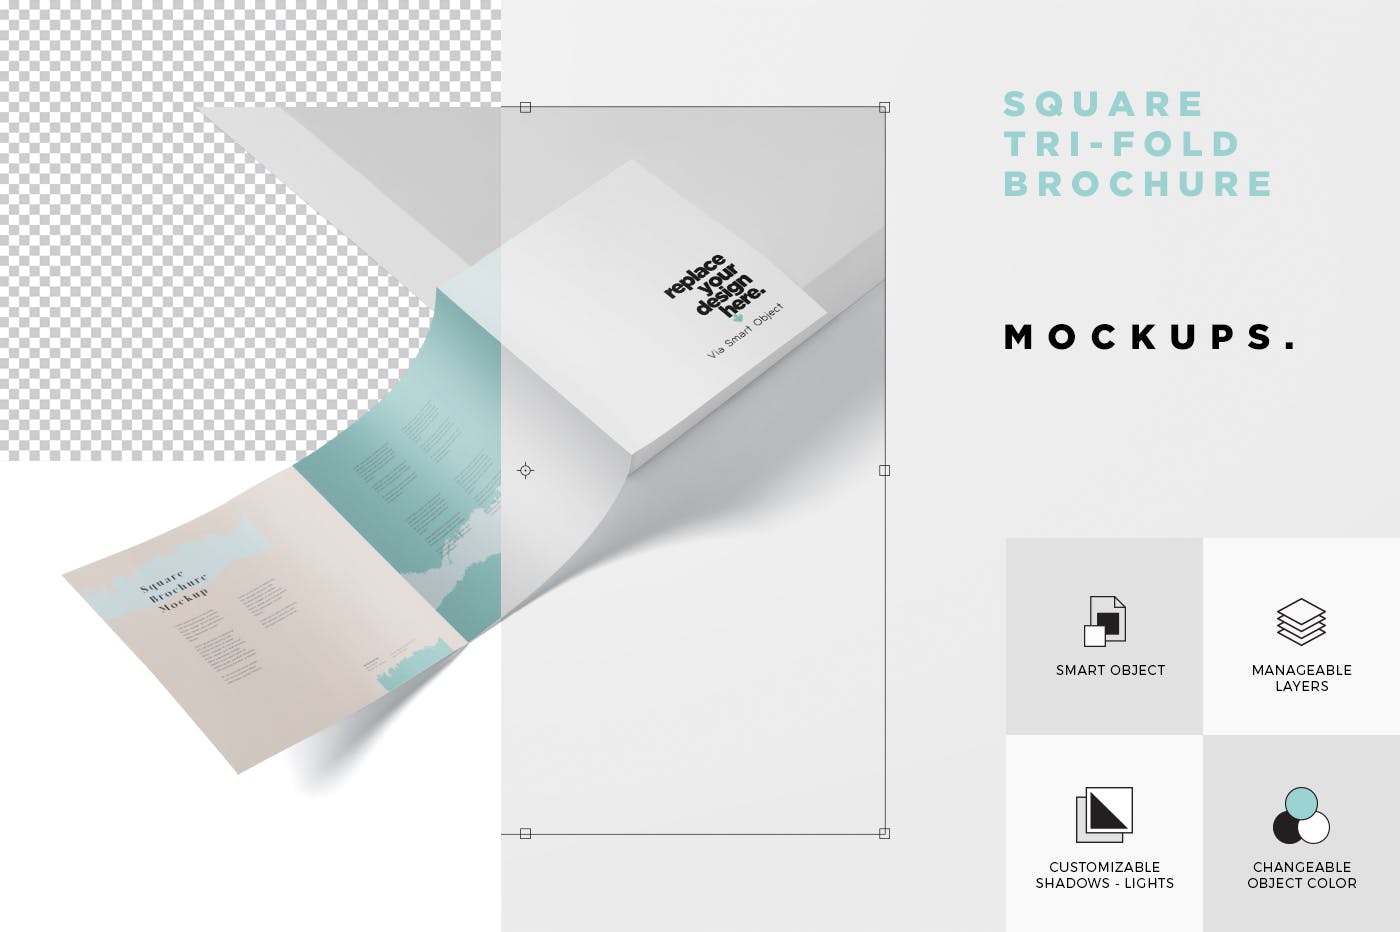 方形三折页宣传册传单印刷效果图样机蚂蚁素材精选 Tri-Fold Brochure Mock-Up – Square插图(5)